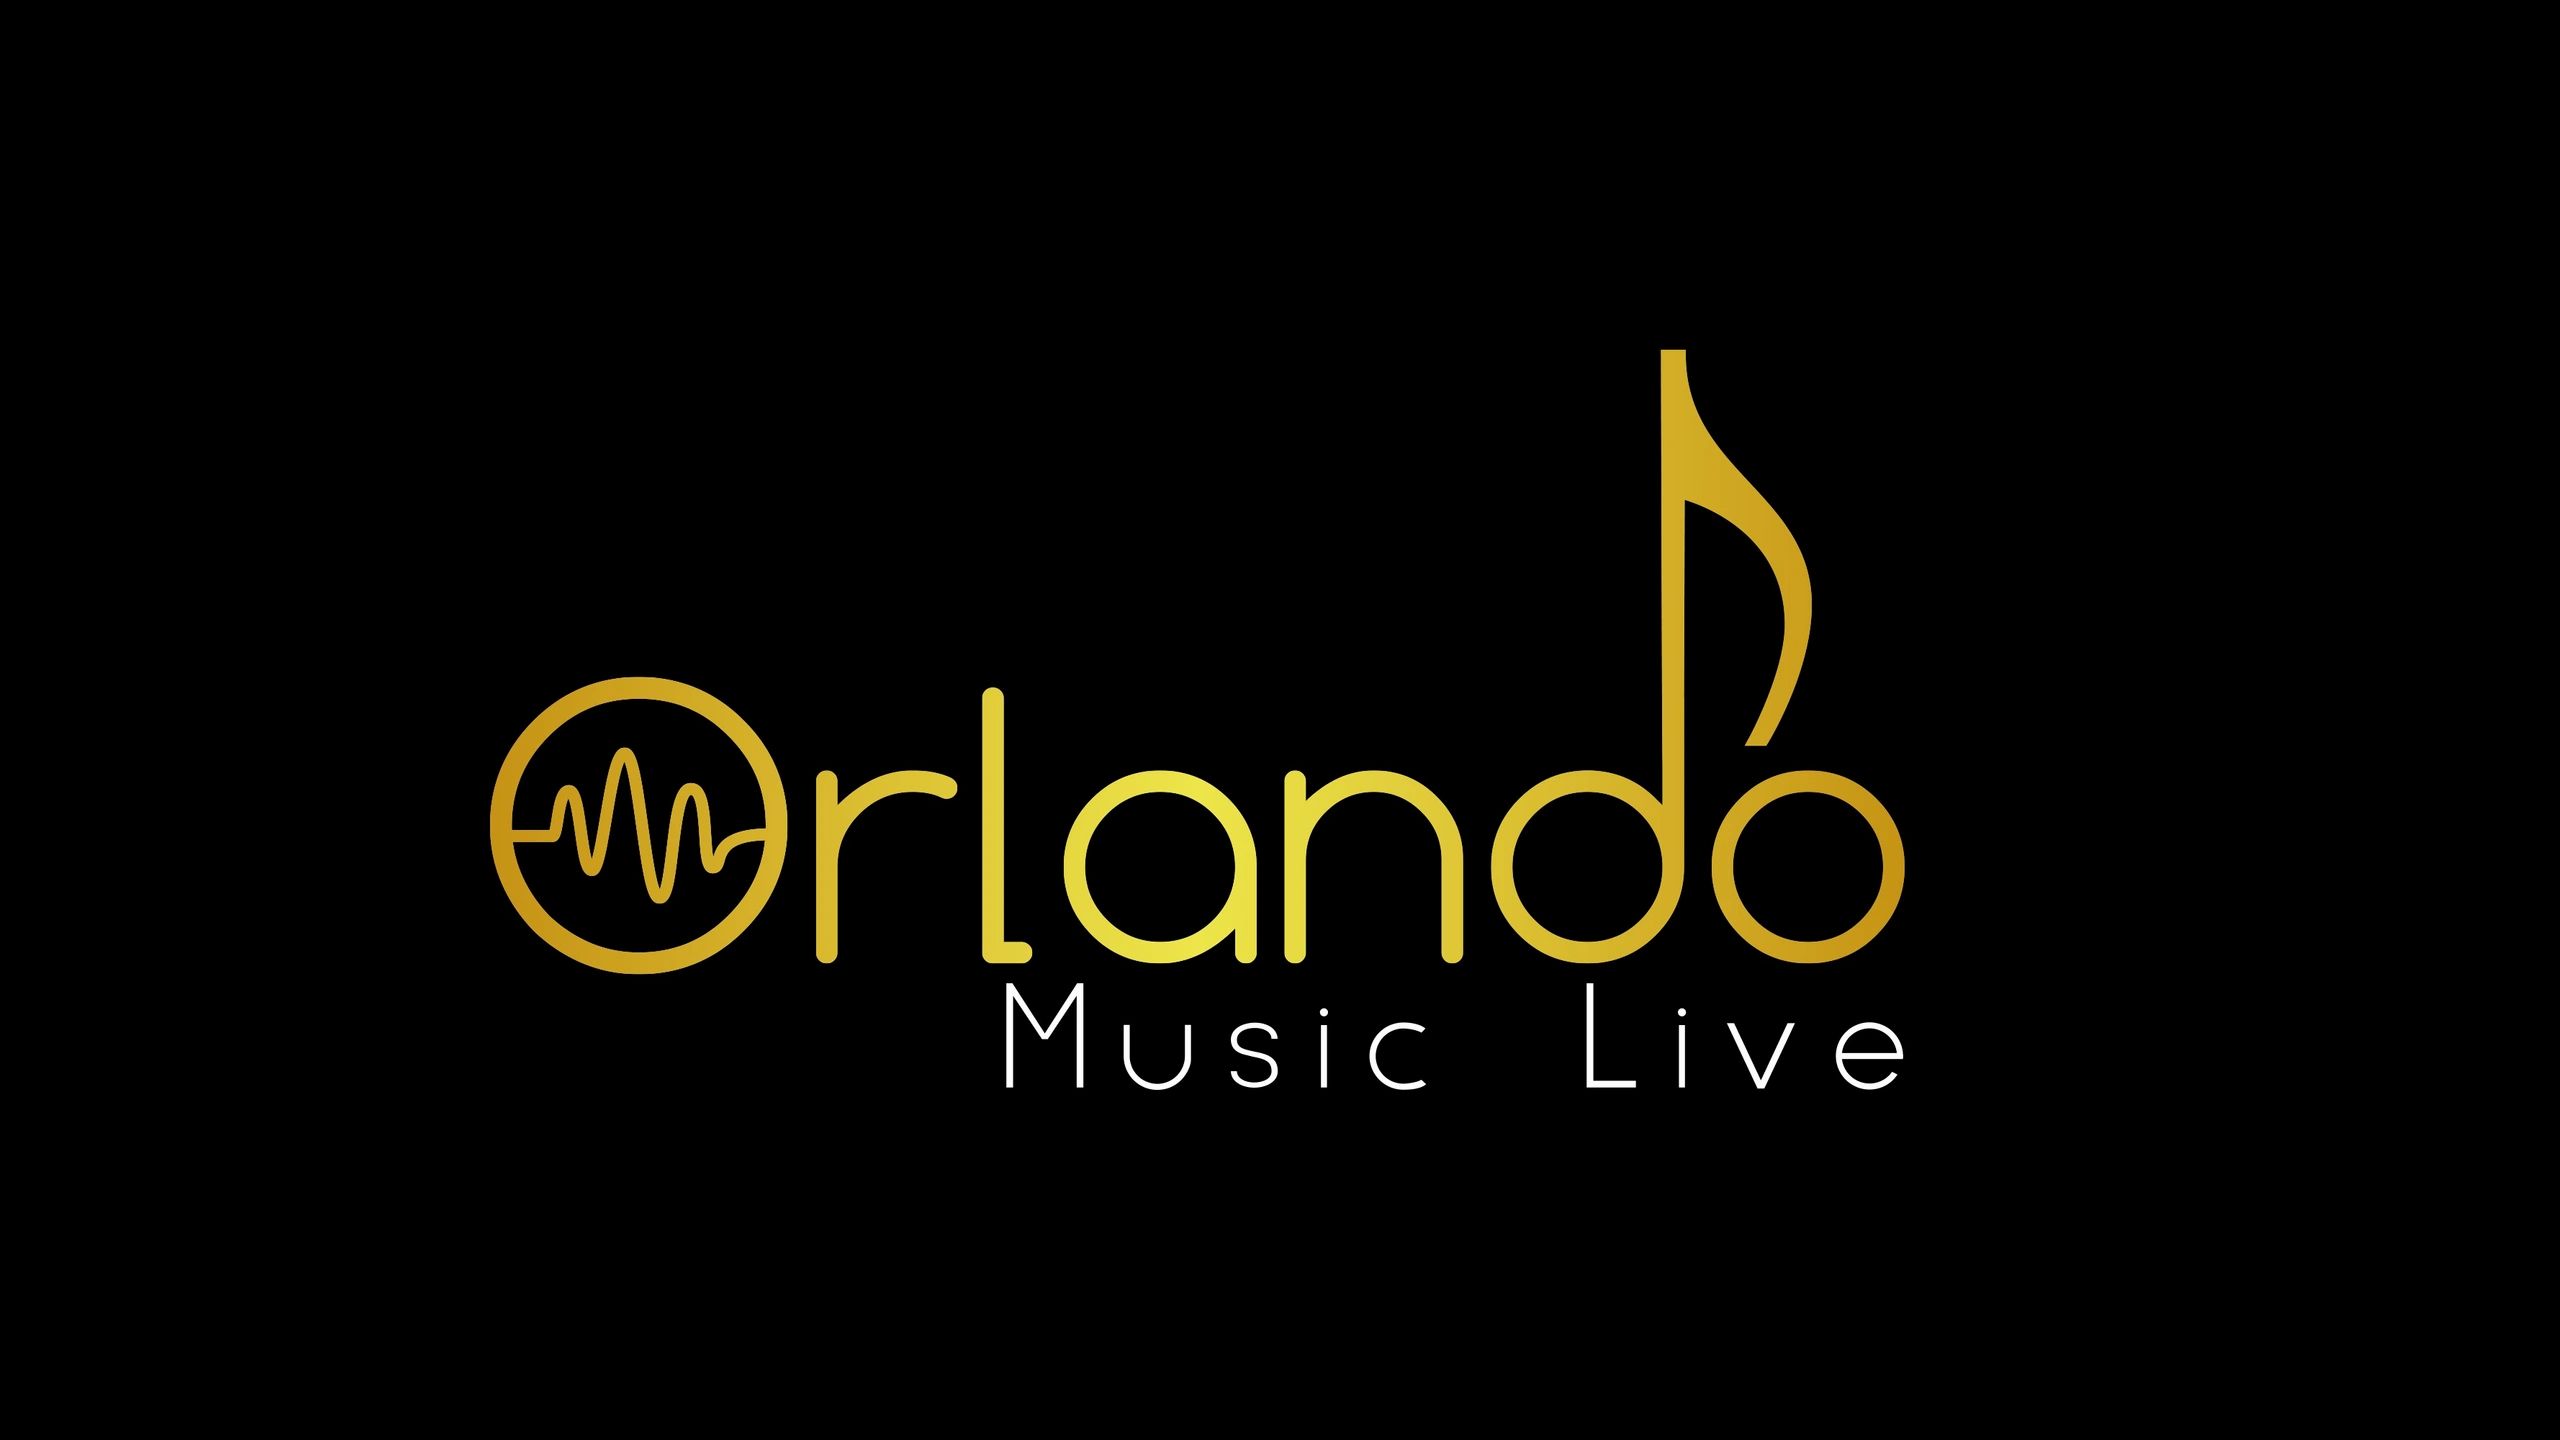 Orlando Music Live Live Music, Live Music Orlando